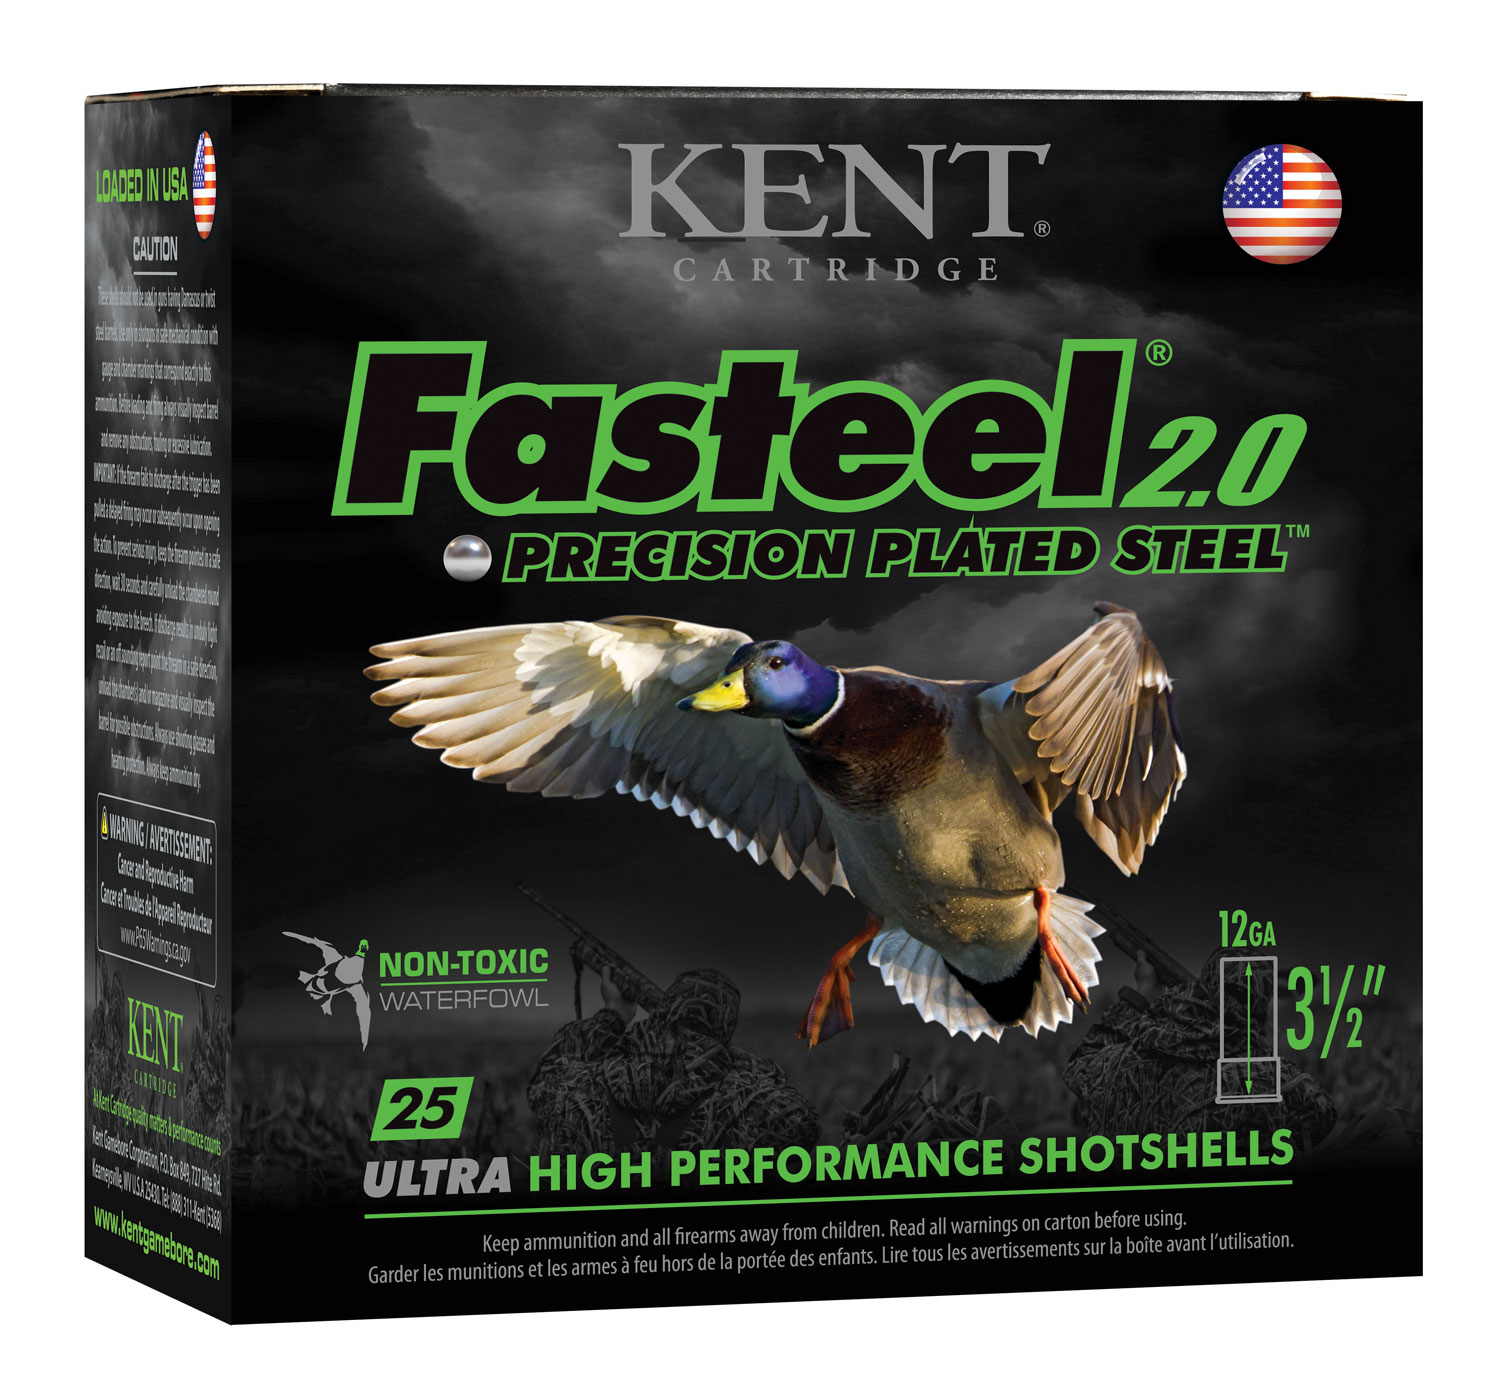 Kent Cartridge K1235FS363 Fasteel 2.0 12 Gauge 3.5